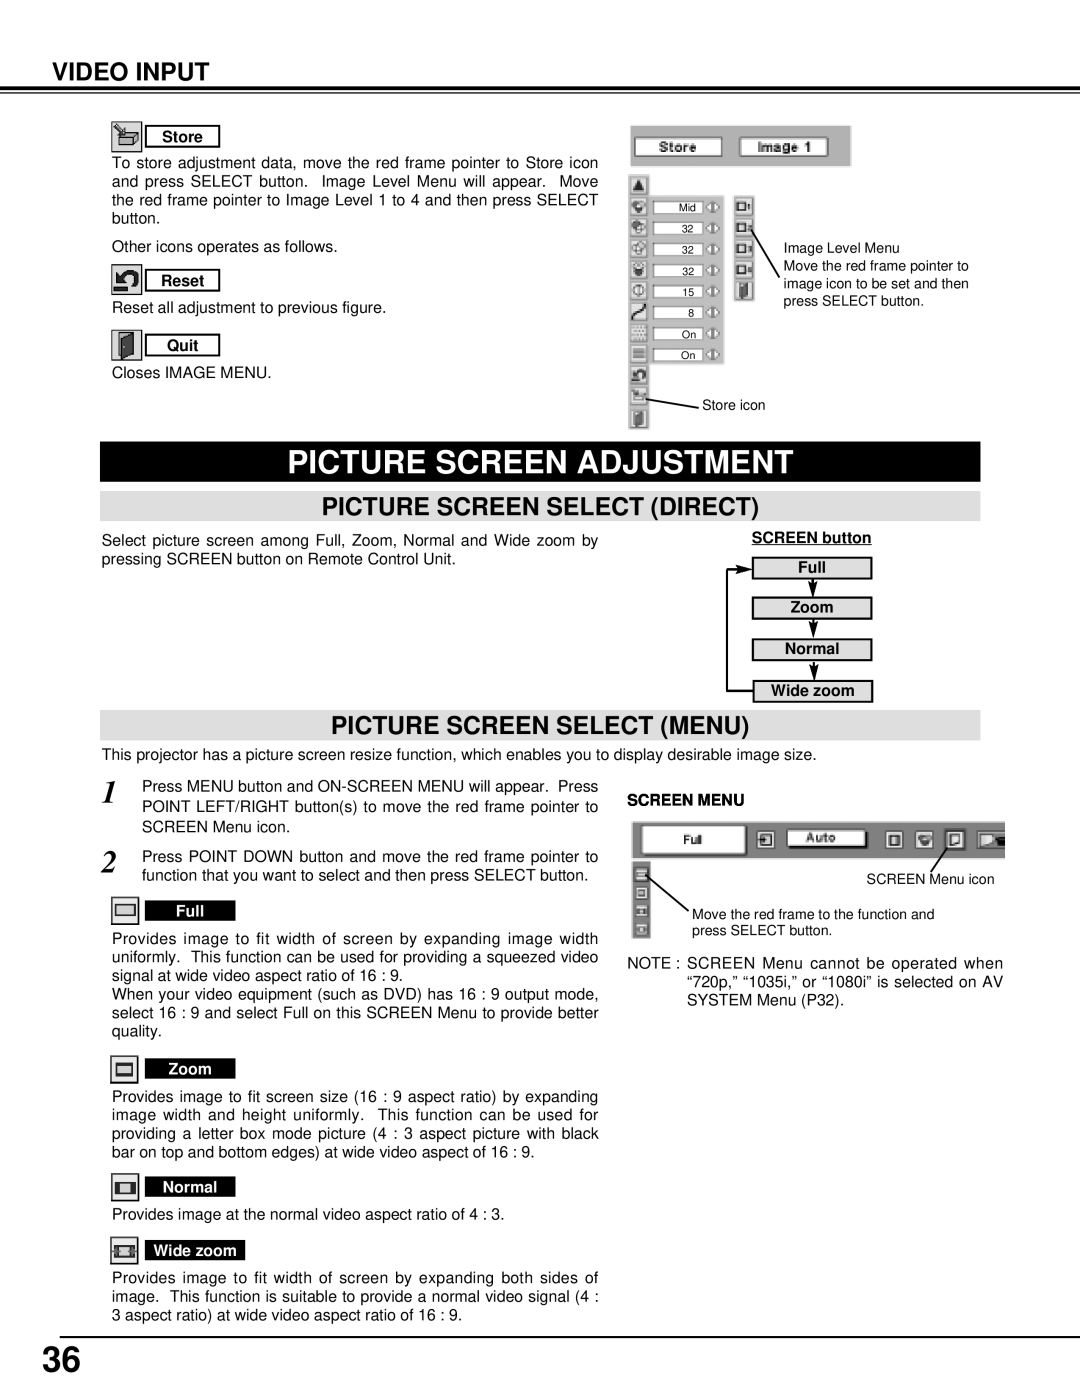 BOXLIGHT CINEMA 20HD Picture Screen Adjustment, Video Input, Picture Screen Select Direct, Picture Screen Select Menu 